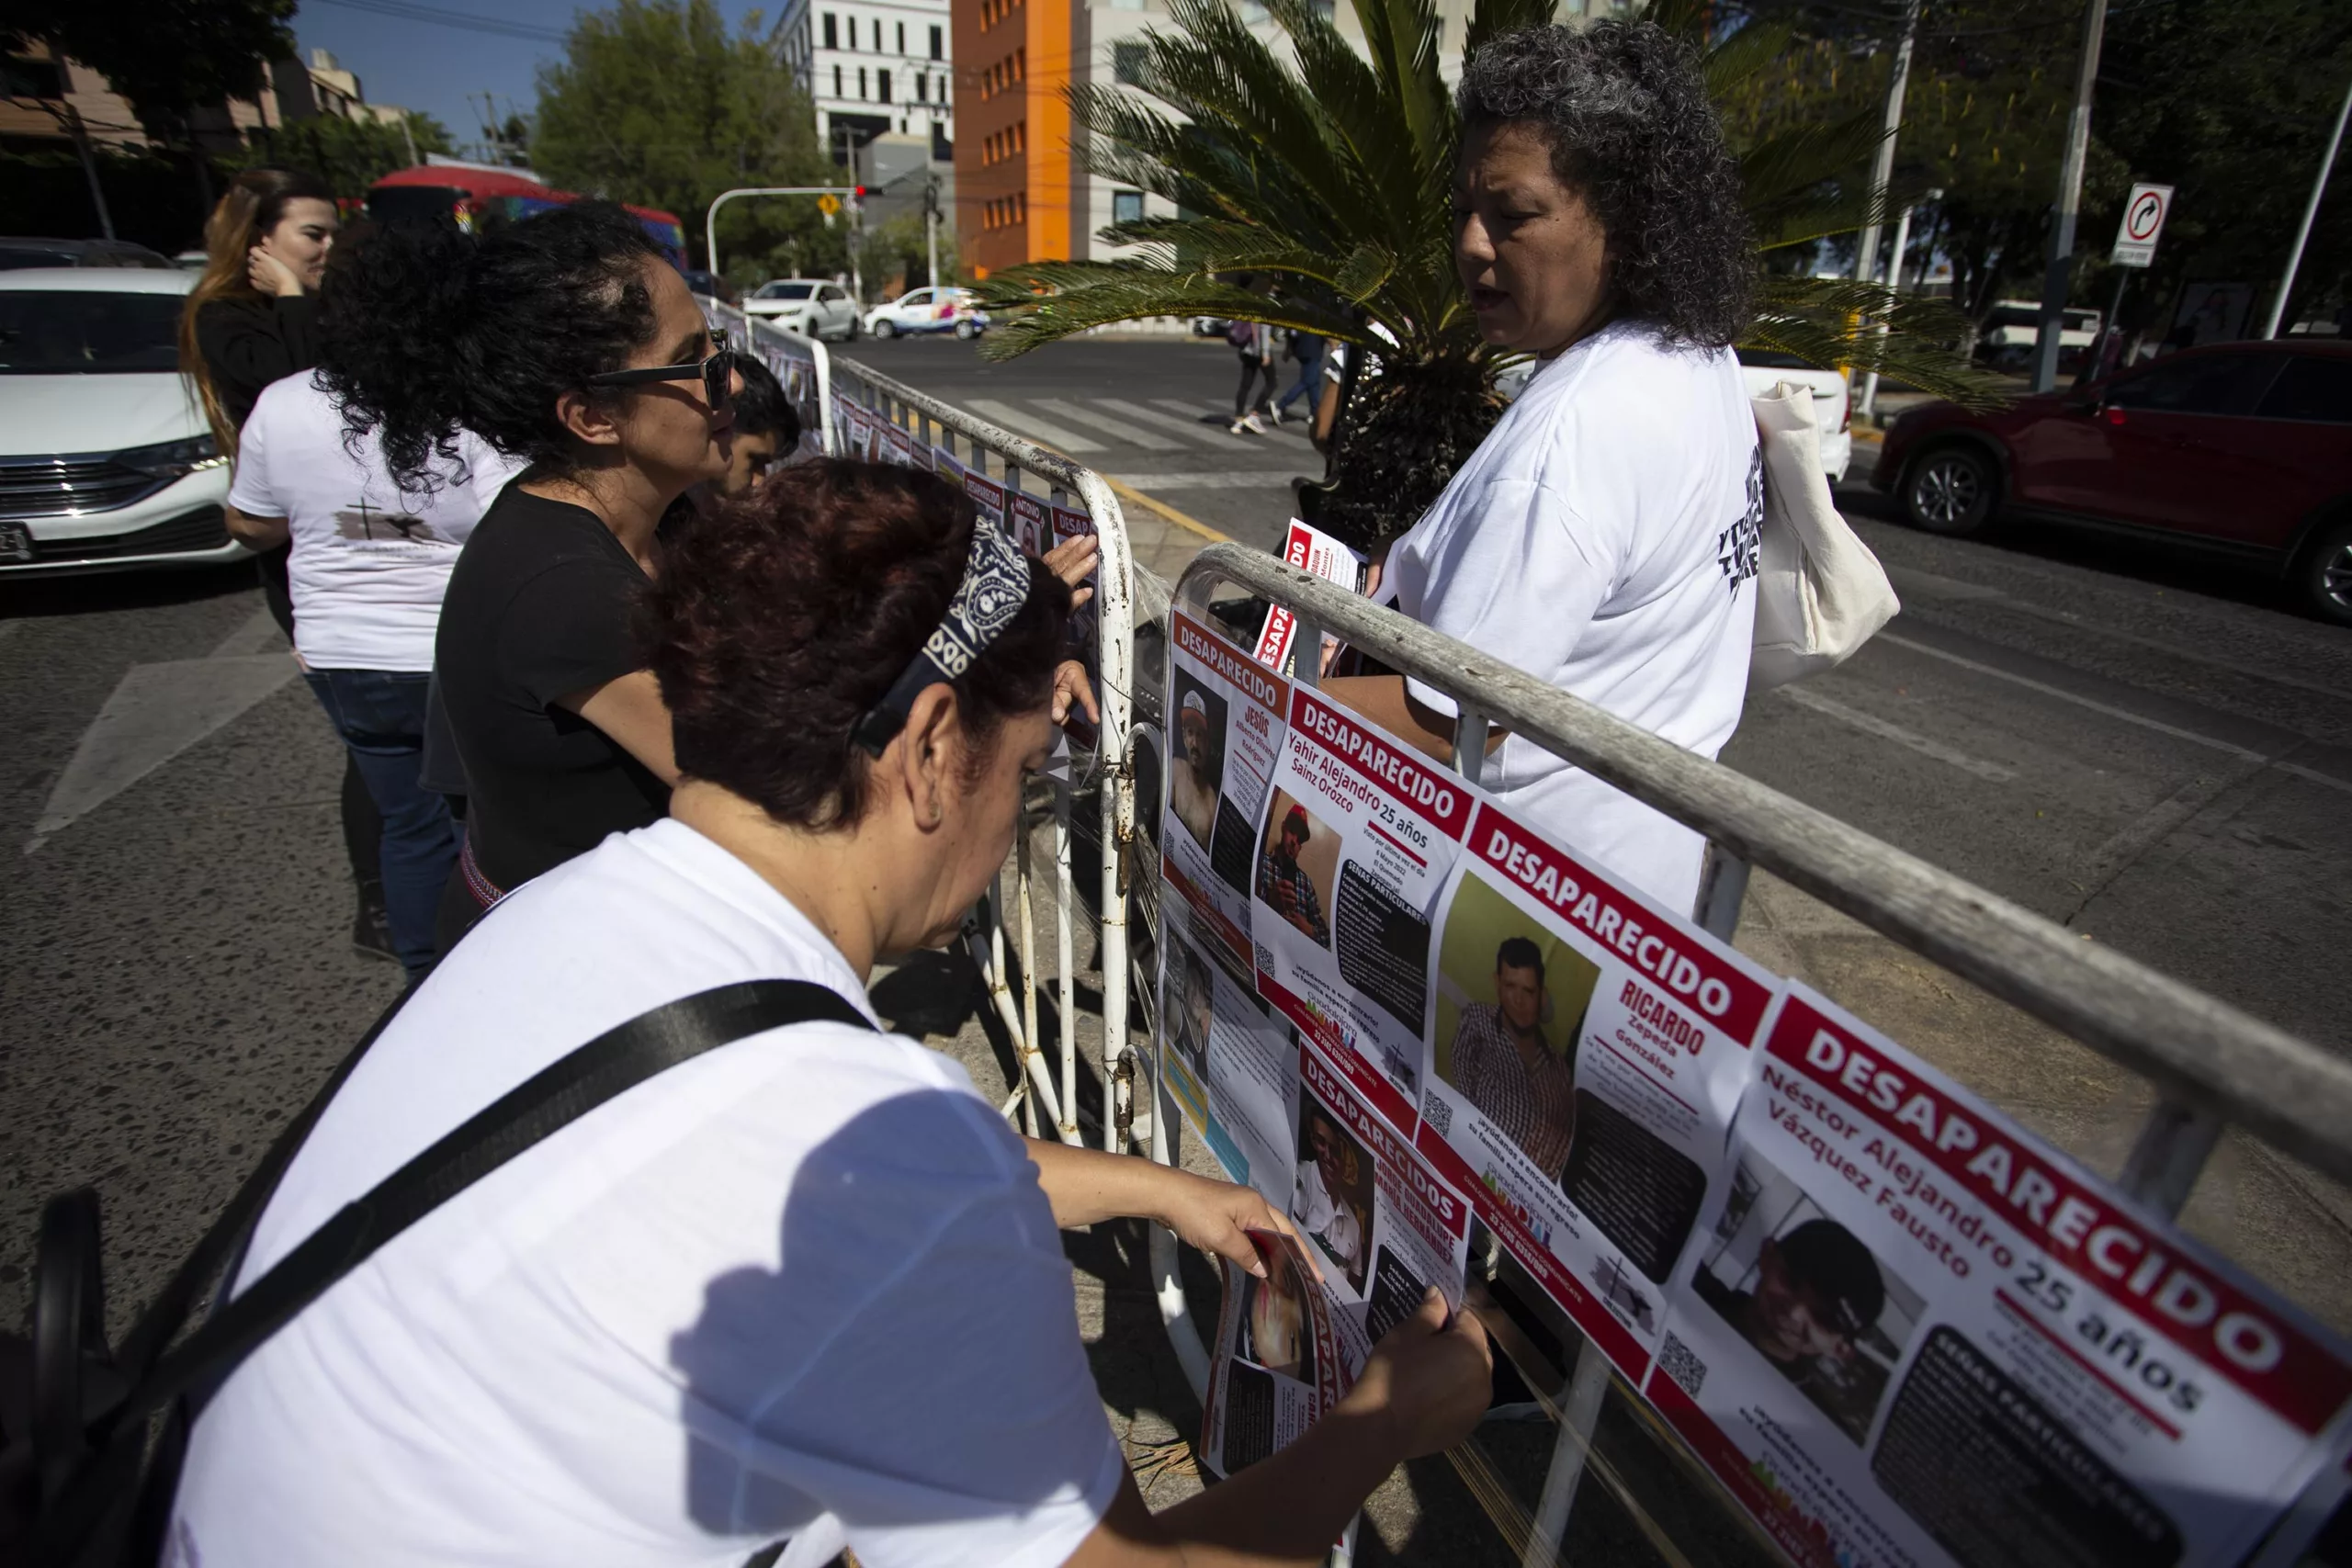 En FIL Guadalajara, el Colectivo Luz de Esperanza llamó a realizar acciones claras ante la crisis de desapariciones